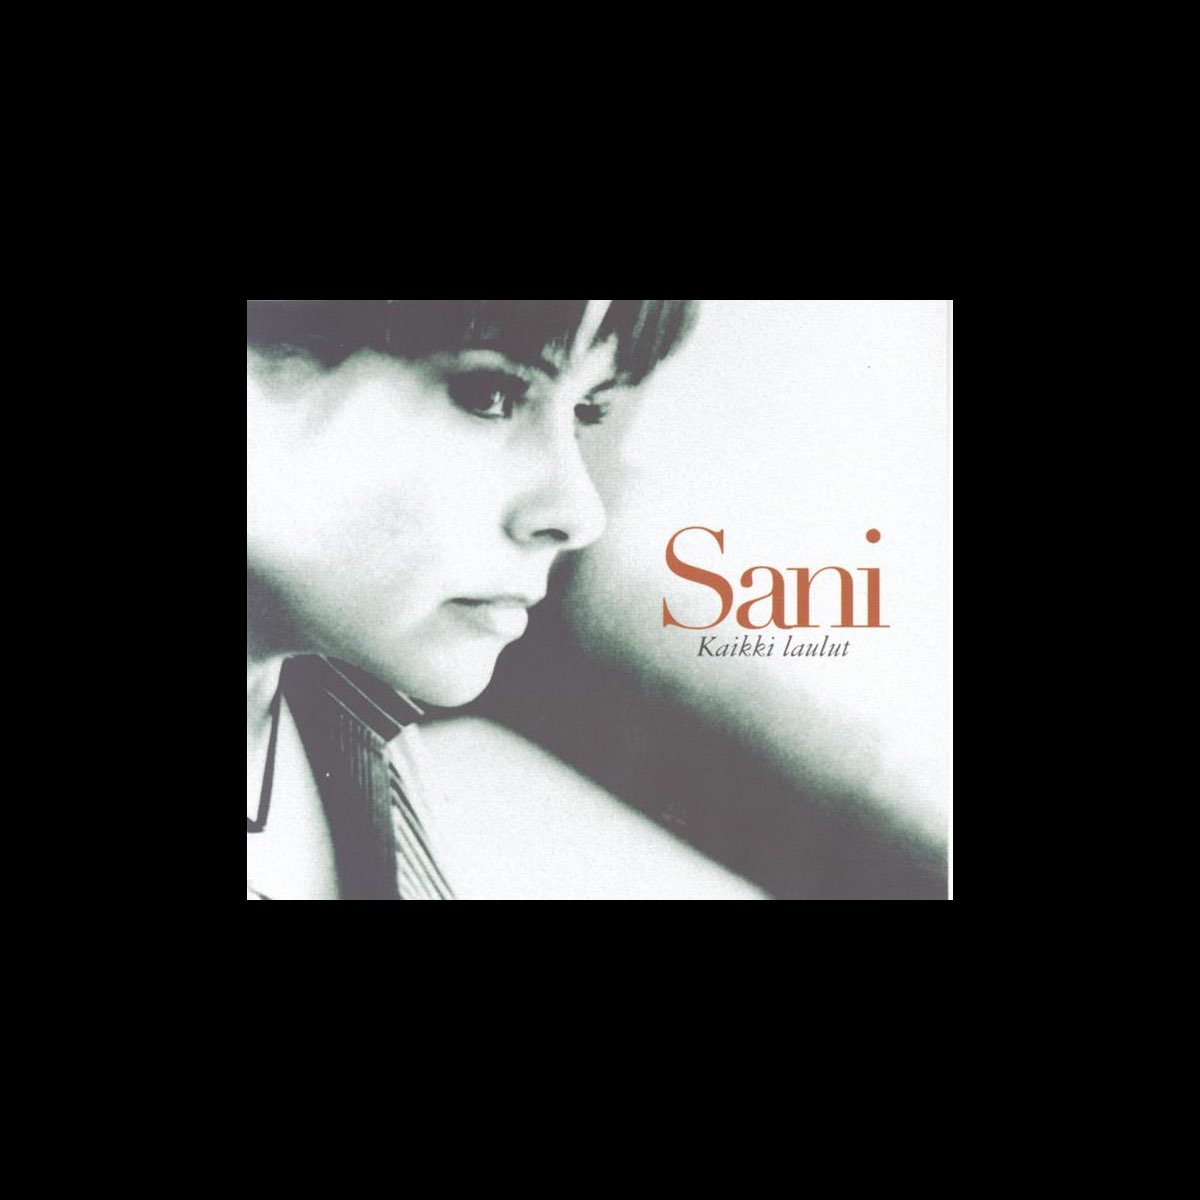 Kaikki Laulut - Single by Sani on Apple Music